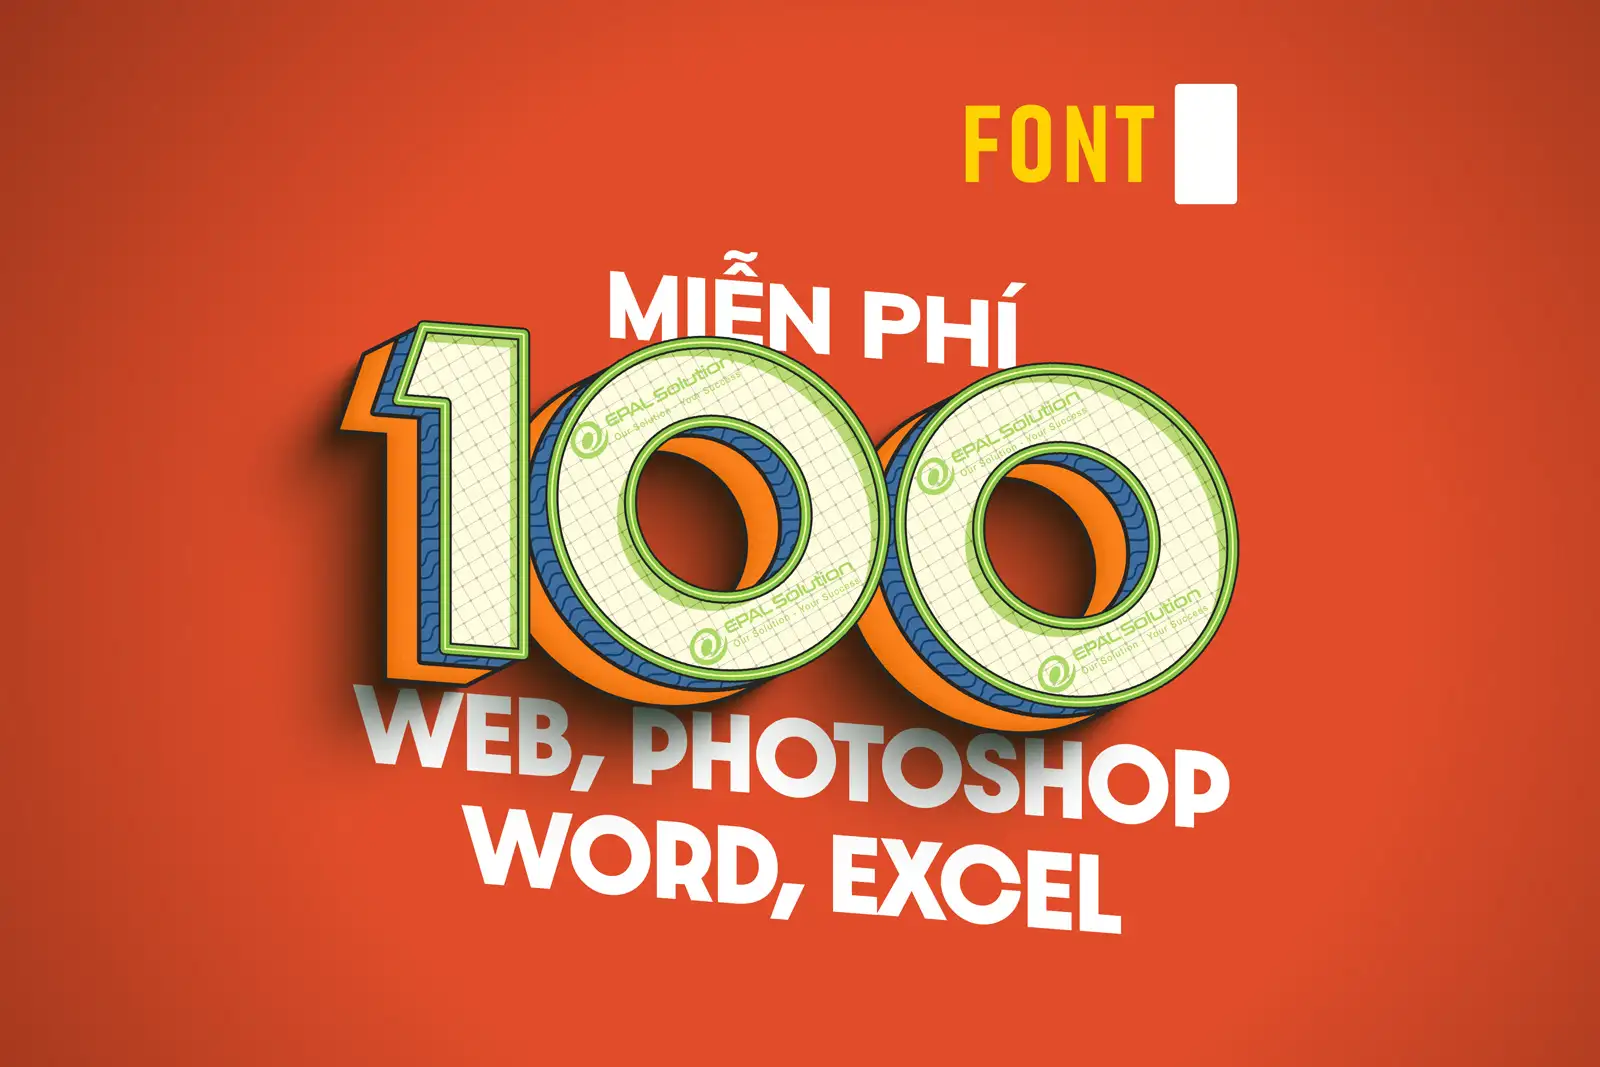 Tải 100 Font Chữ Đẹp Cho Thiết Kế Web, Photoshop Word, Excel